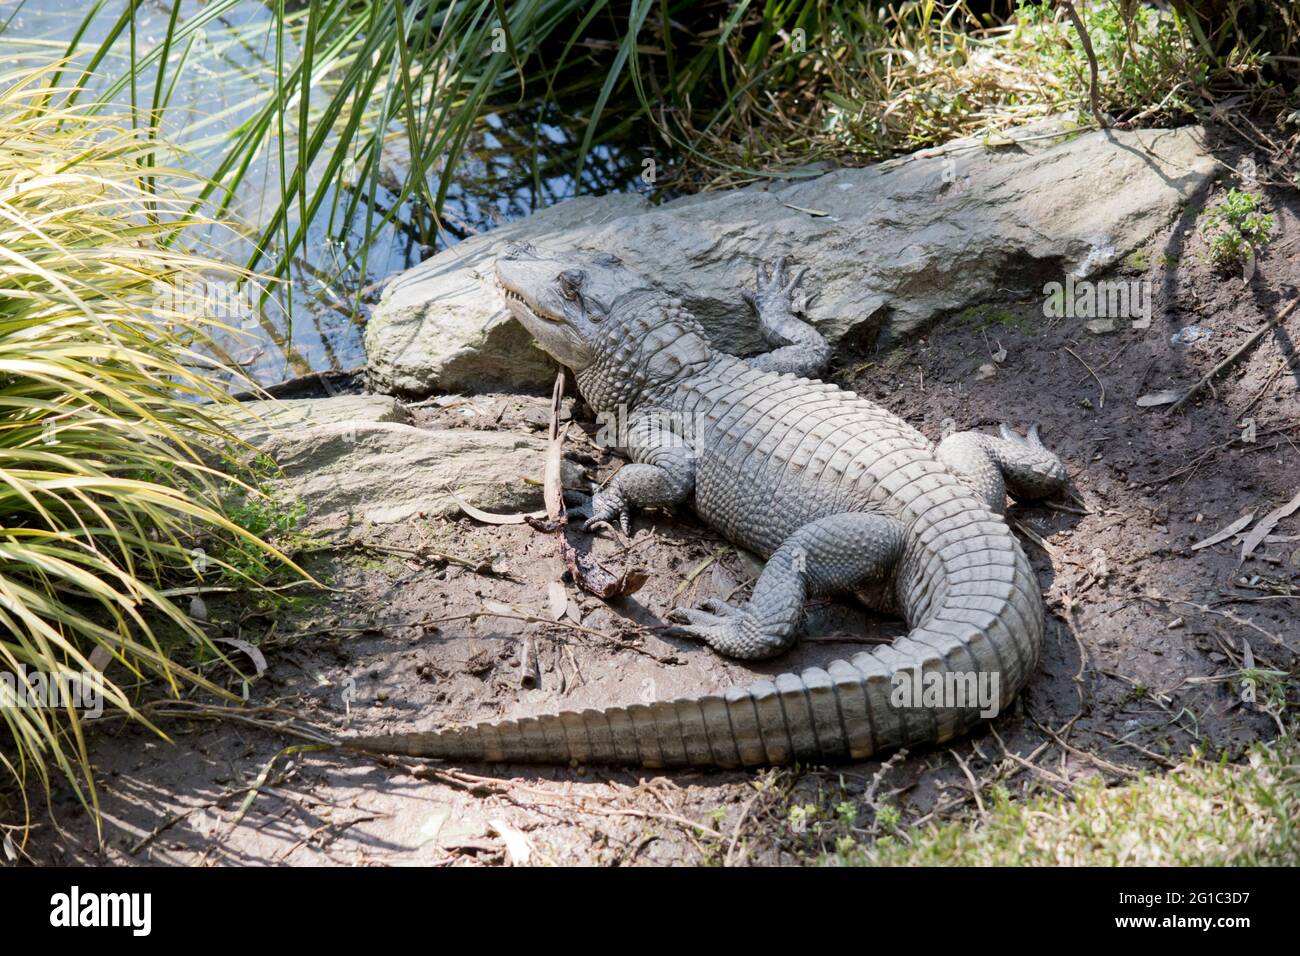 Der Alligator ruht in der Sonne, da er kaltblütig ist Stockfoto